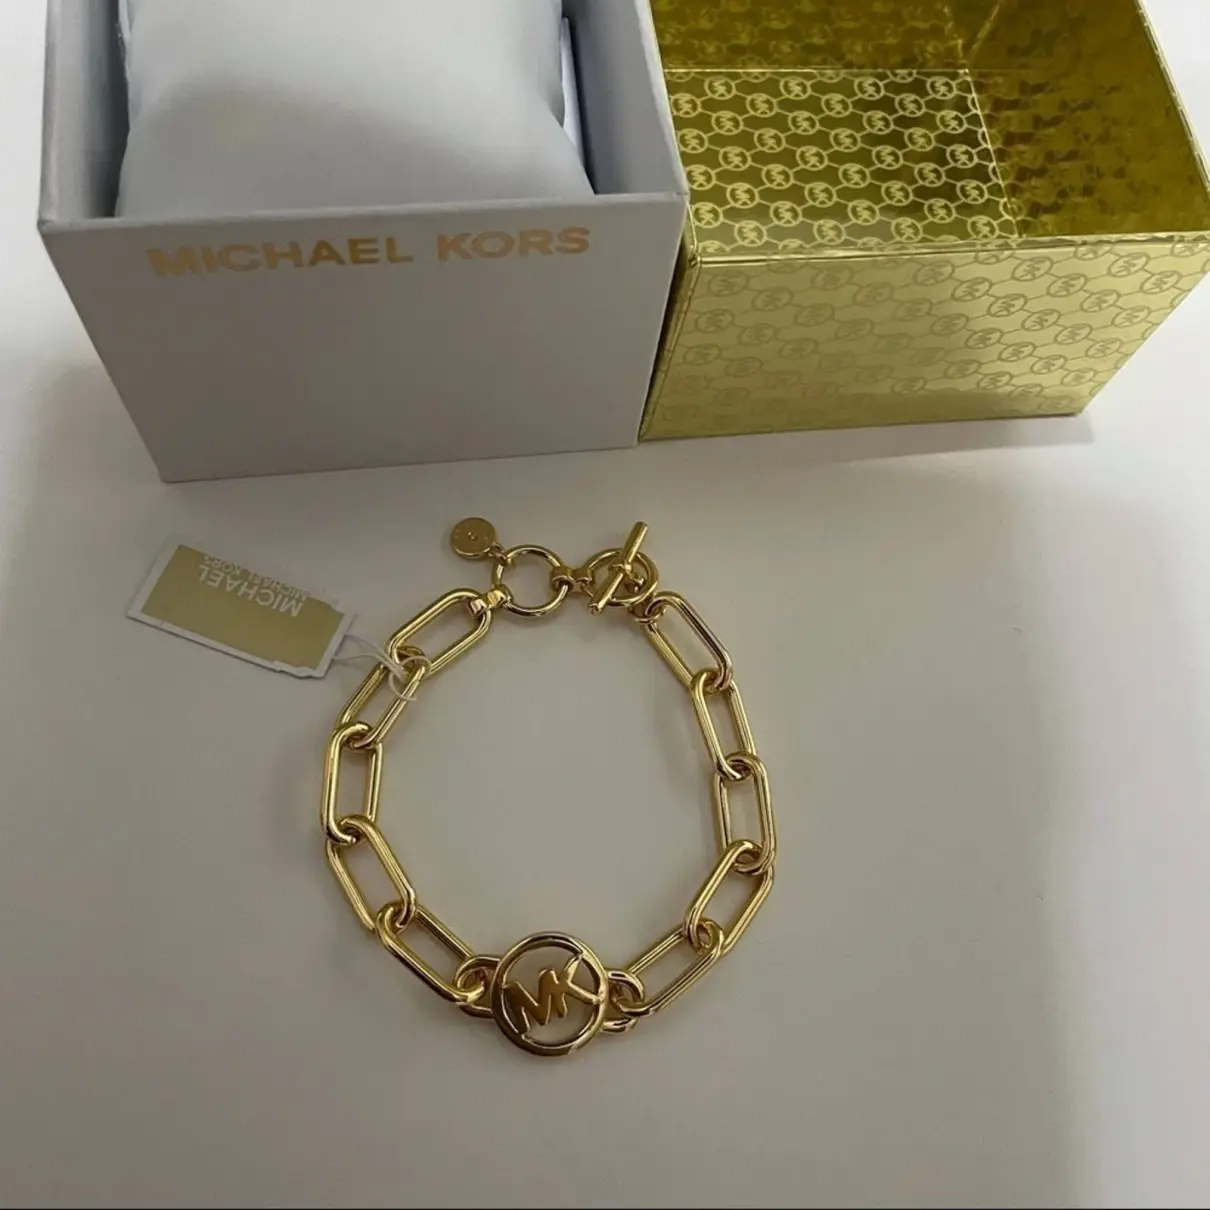 Luxury Michael Kors Bracelets Women